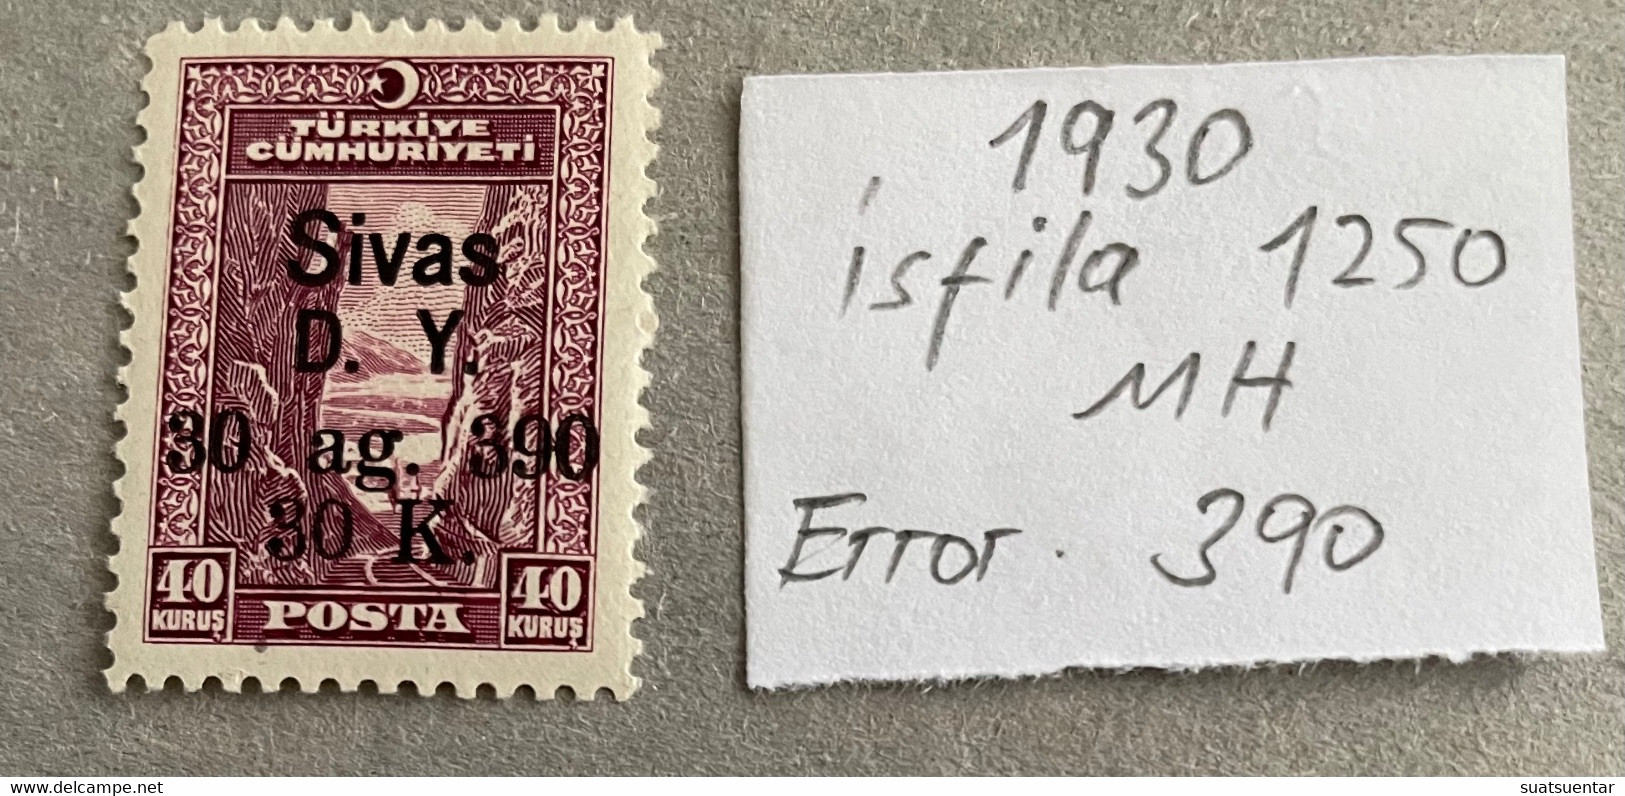 1930 Sivas-Ankara Railway Stamps Error   390 MH Isfila 1250 - Nuevos